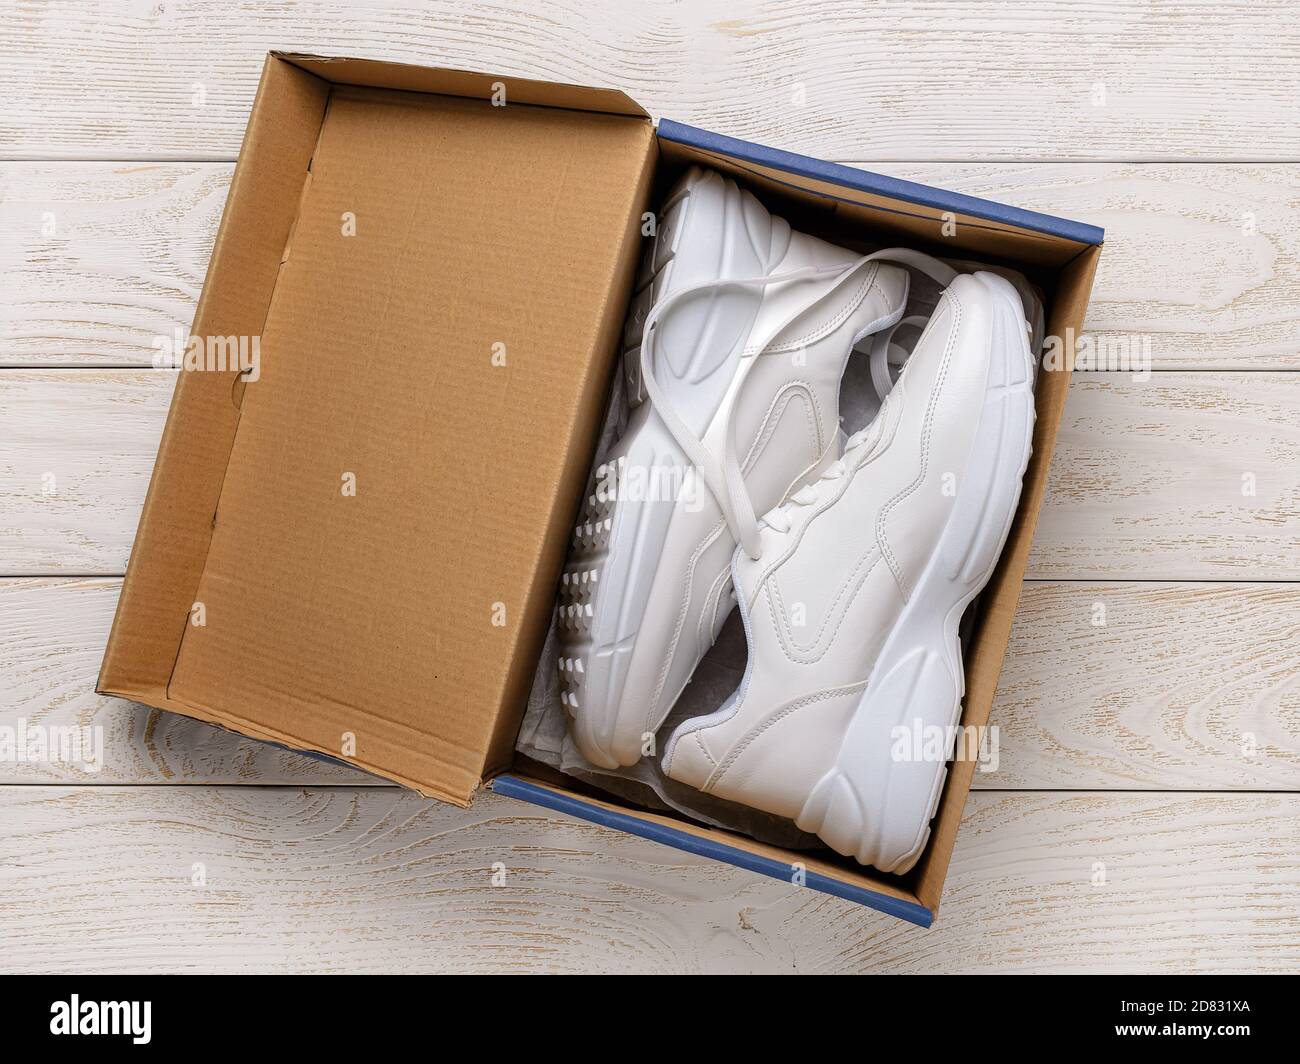 Zwei weiße Turnschuhe mit grober Sohle in einer braunen Kartonschachtel auf  dem weißen Holzboden. Offene Box mit neuen bequemen Schuhen für aktiven  Lifestyle, Fitness Stockfotografie - Alamy